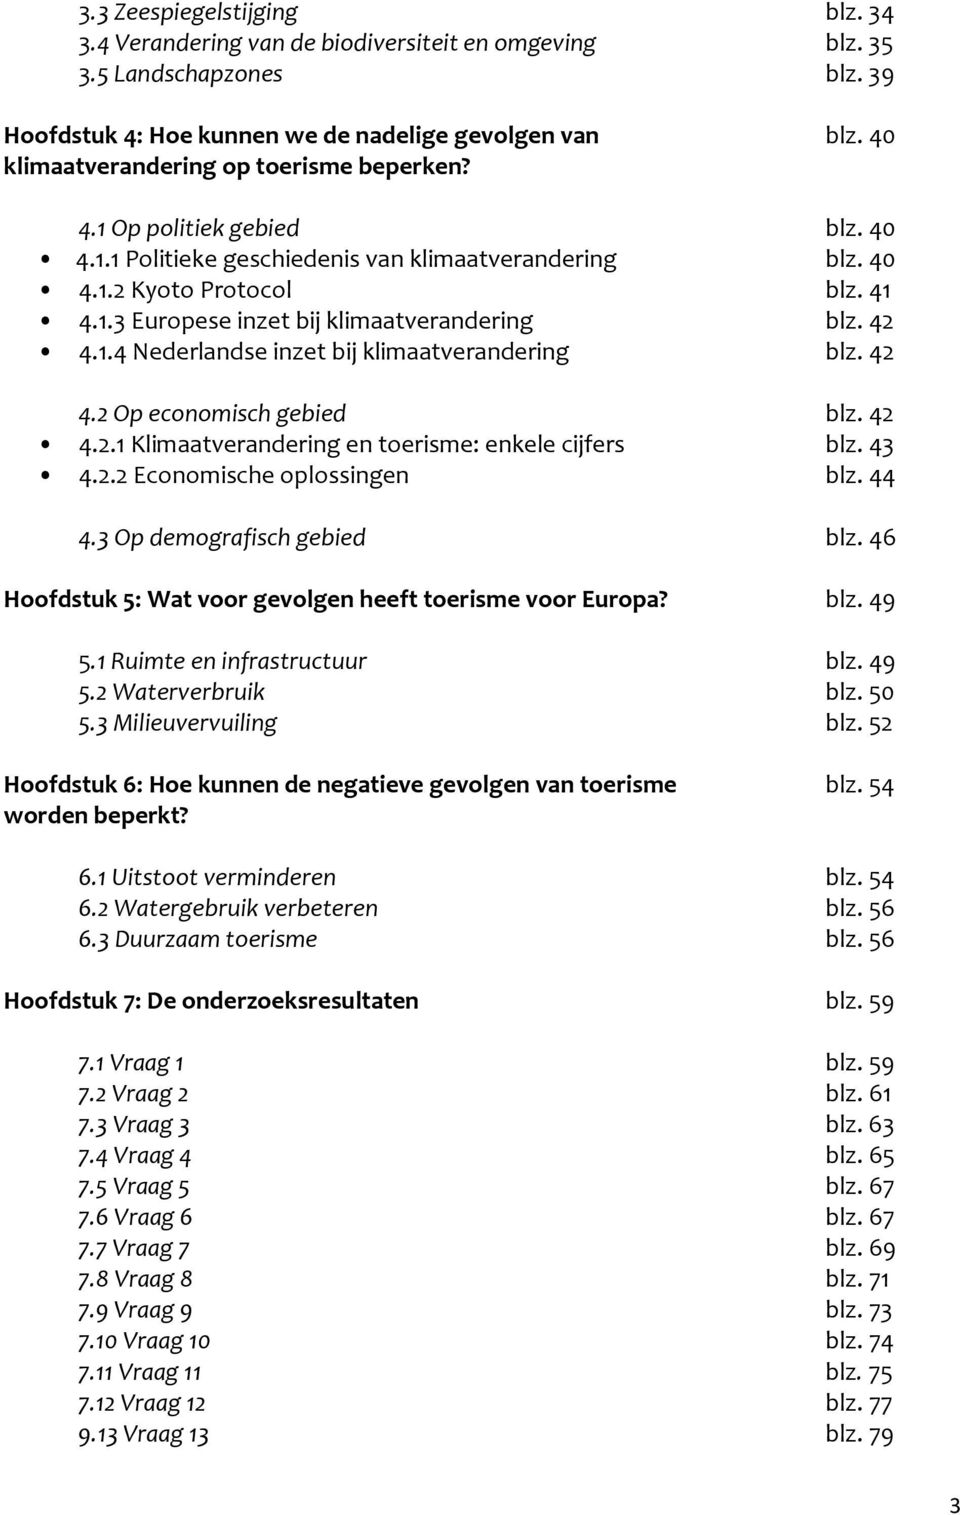 42 4.1.4 Nederlandse inzet bij klimaatverandering blz. 42 4.2 Op economisch gebied blz. 42 4.2.1 Klimaatverandering en toerisme: enkele cijfers blz. 43 4.2.2 Economische oplossingen blz. 44 4.